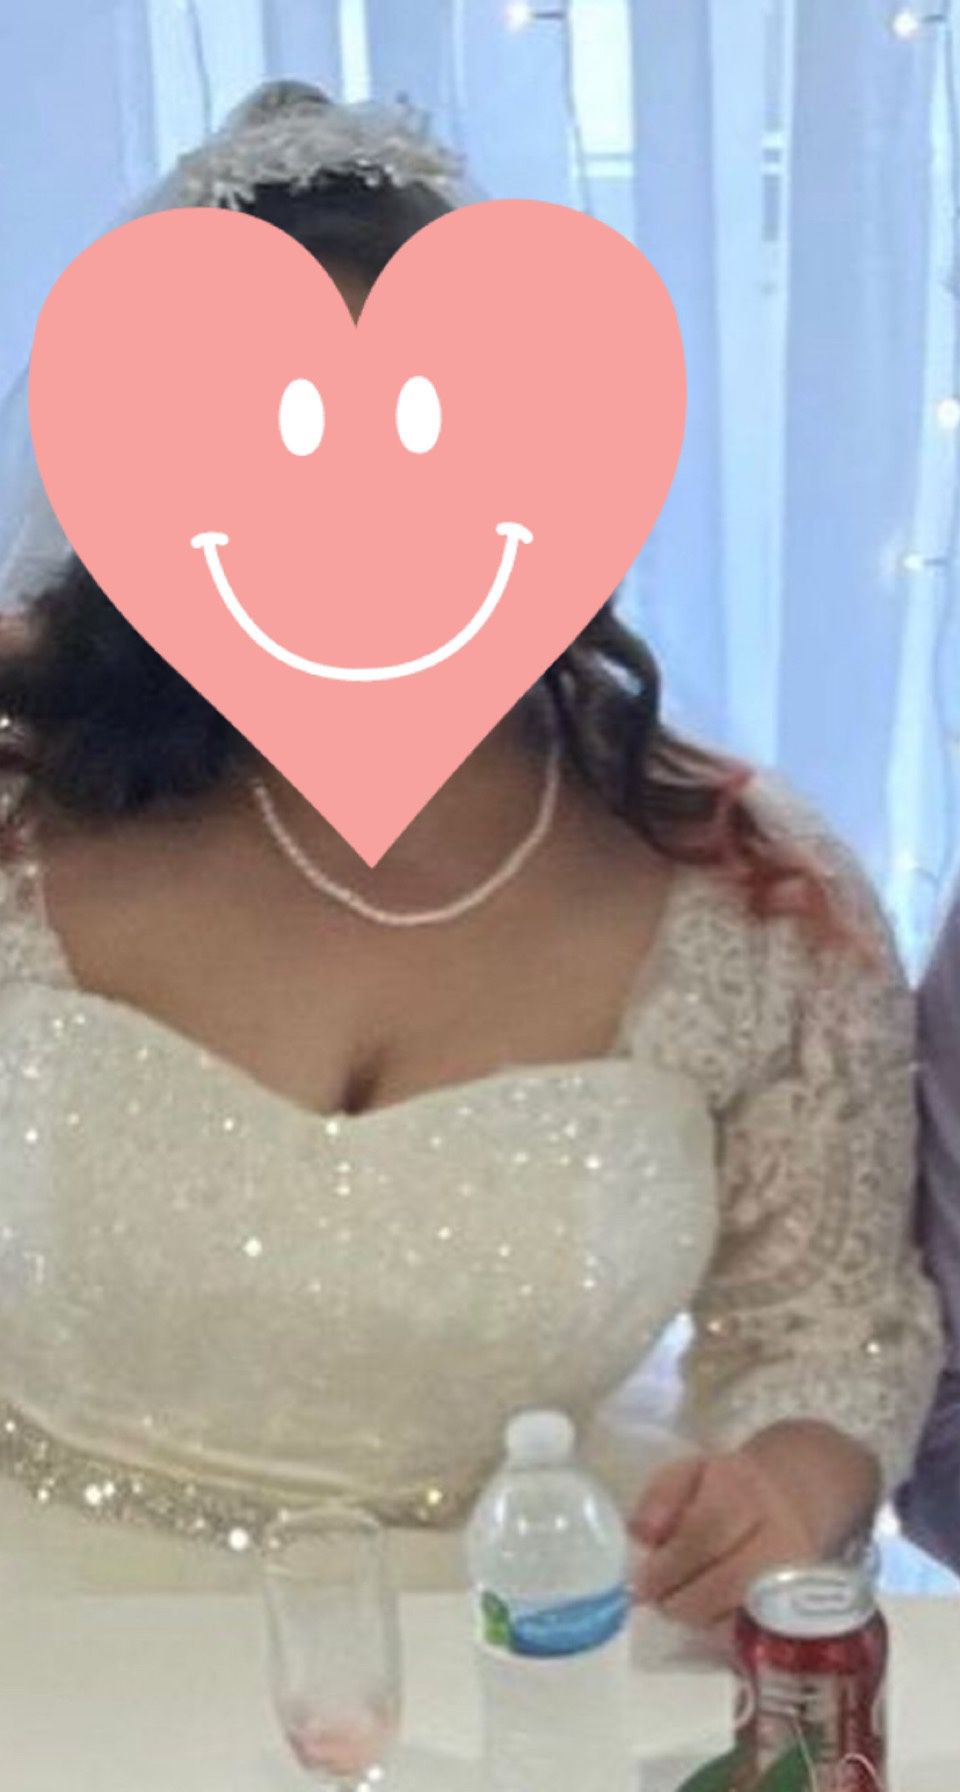 Wedding Dress Size 22w